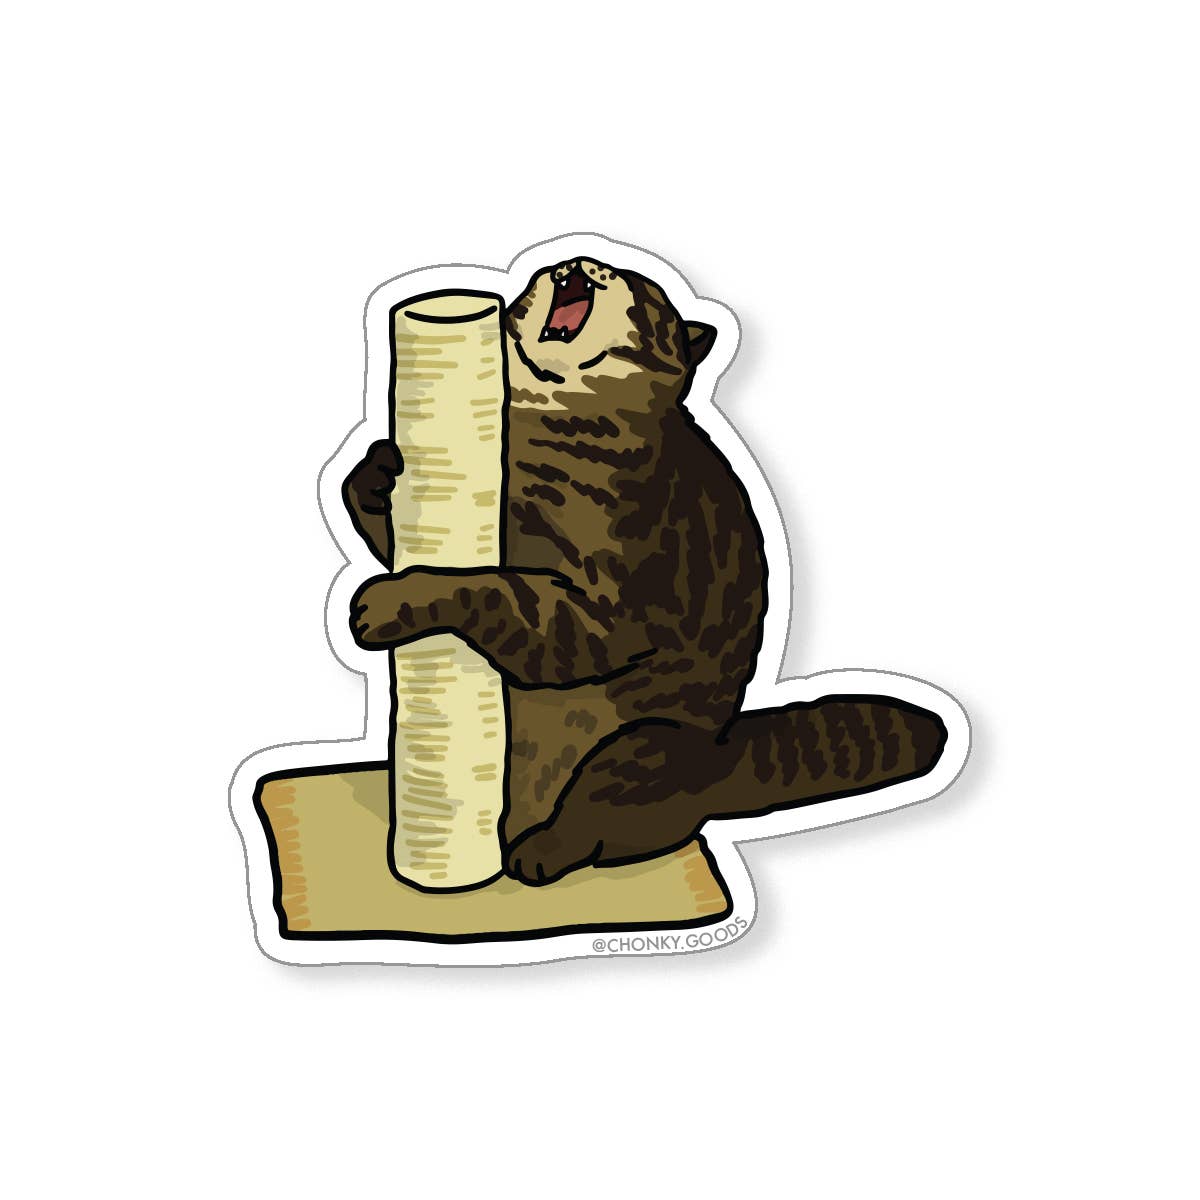 Cat Meme Die-Cut Stickers: Net flix